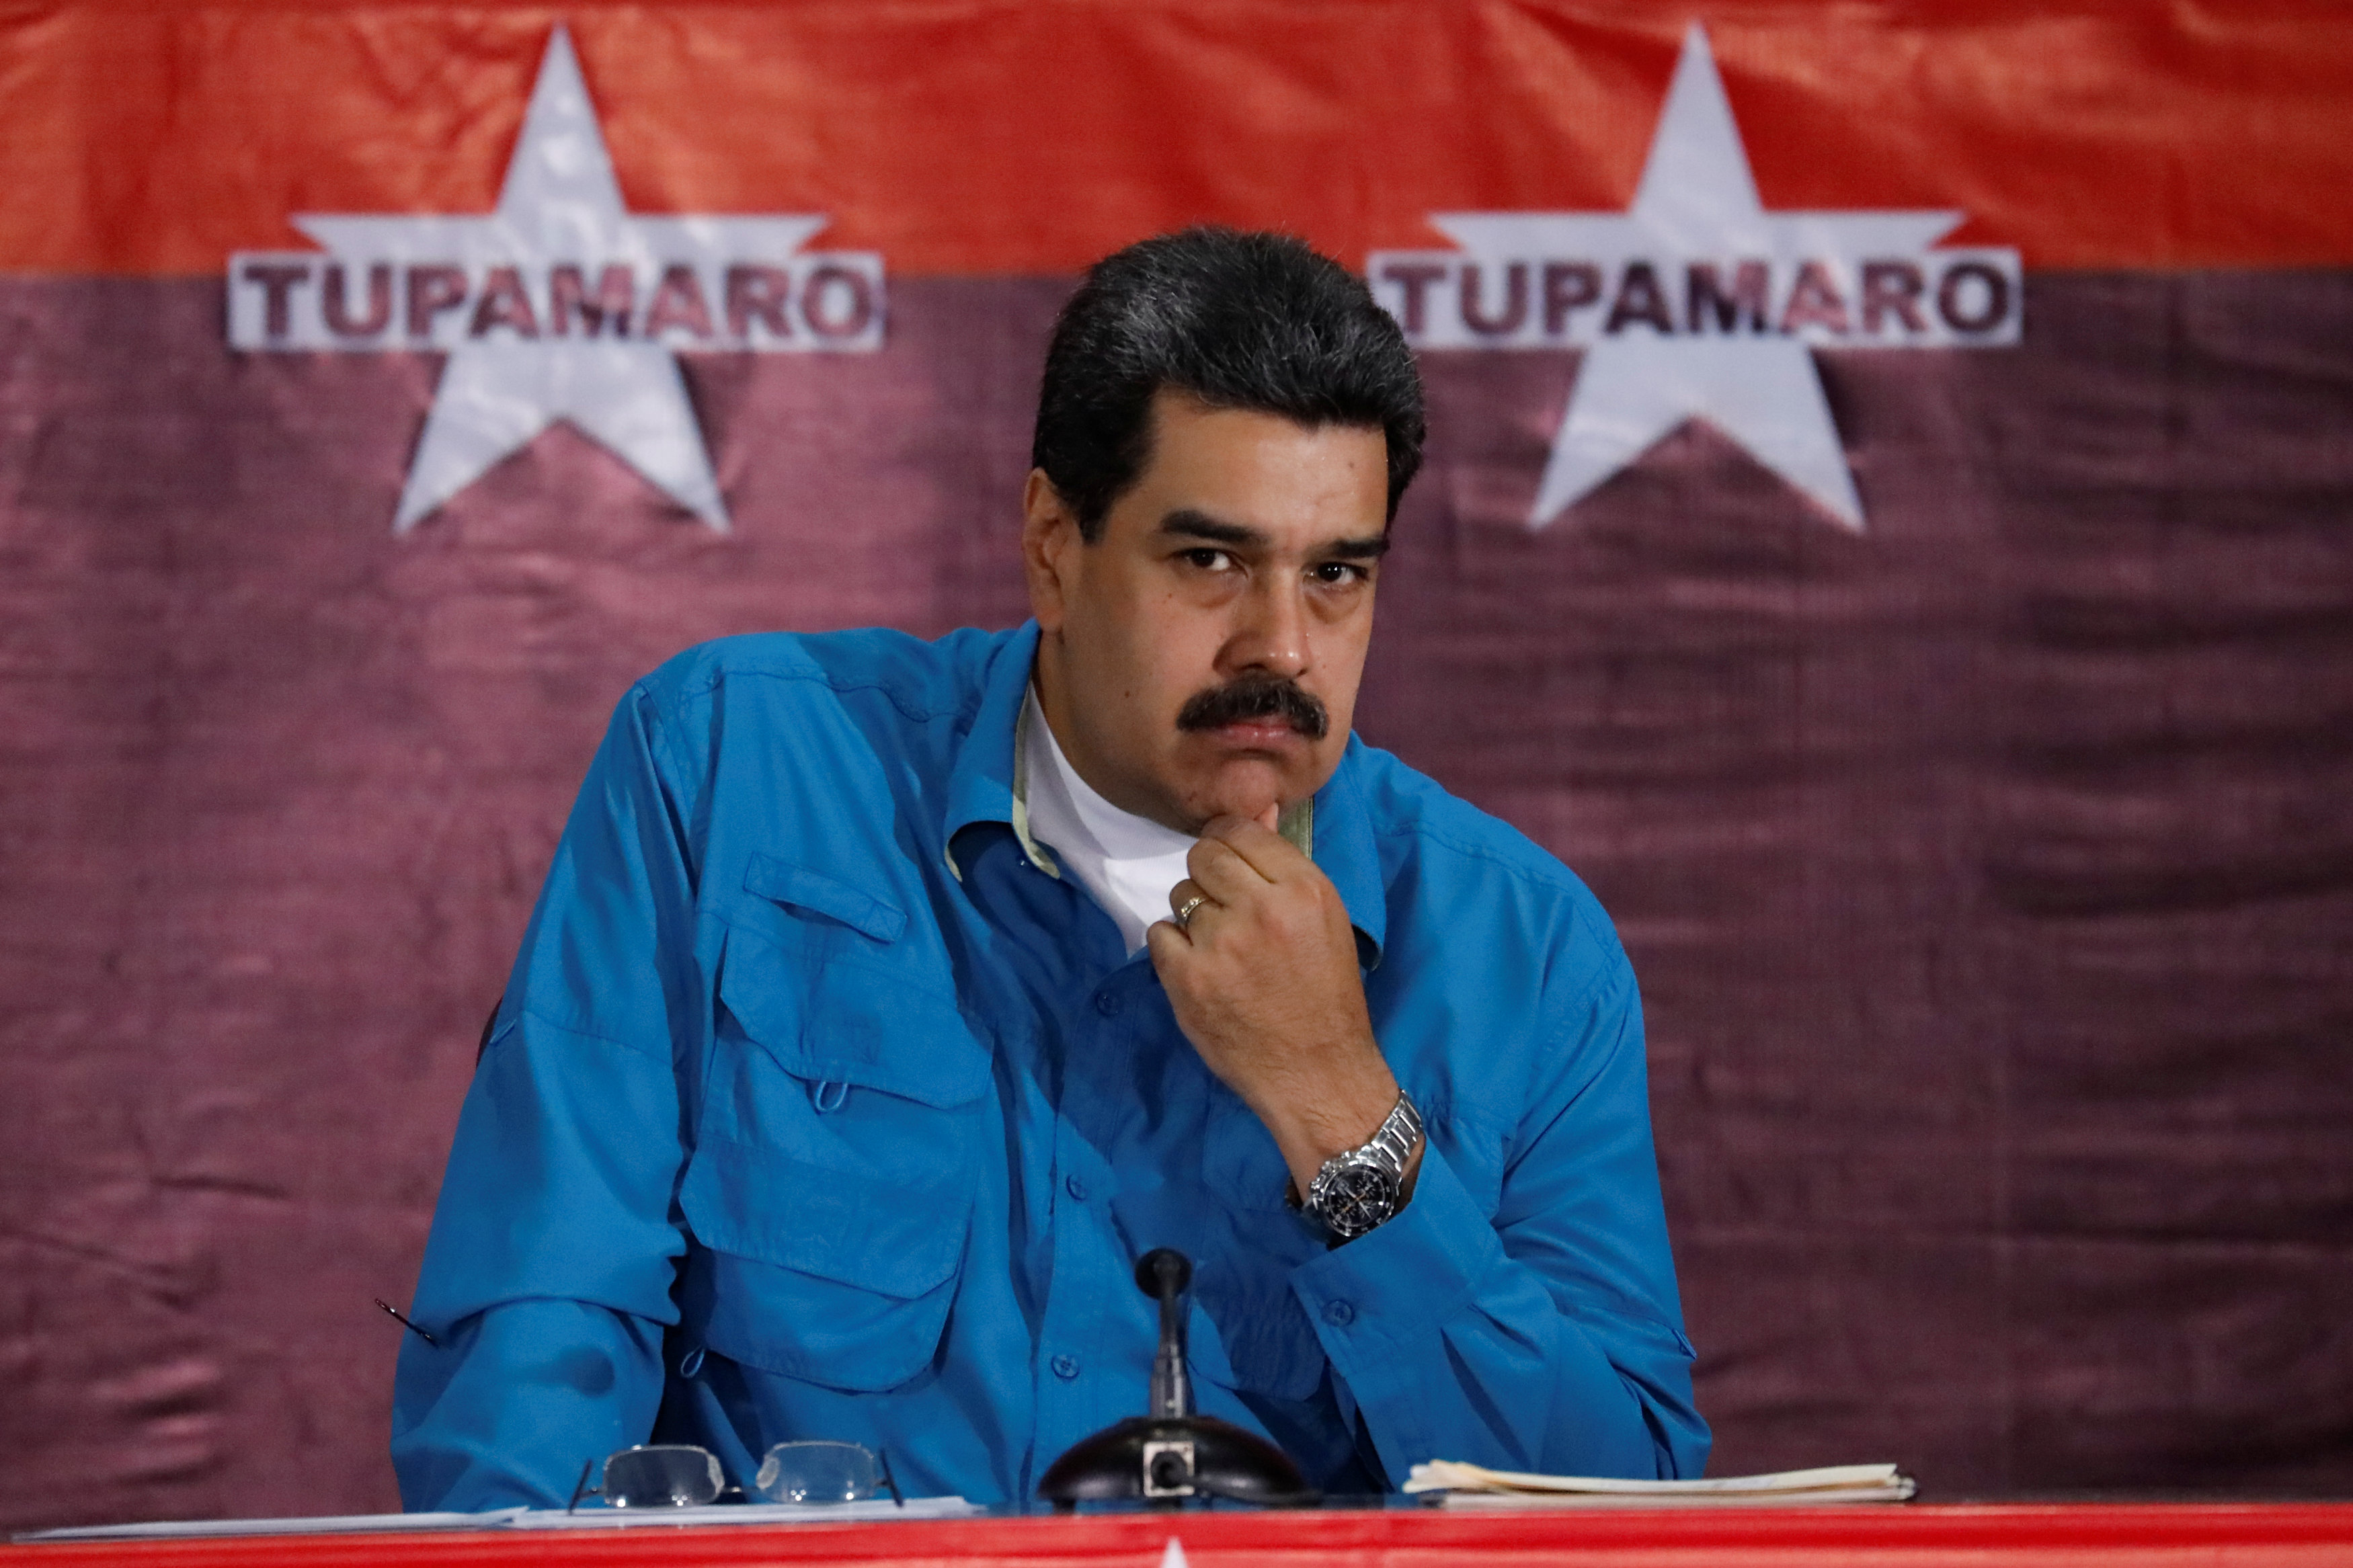 Esta noche Maduro dará una sorpresa en su cuenta de Twitter